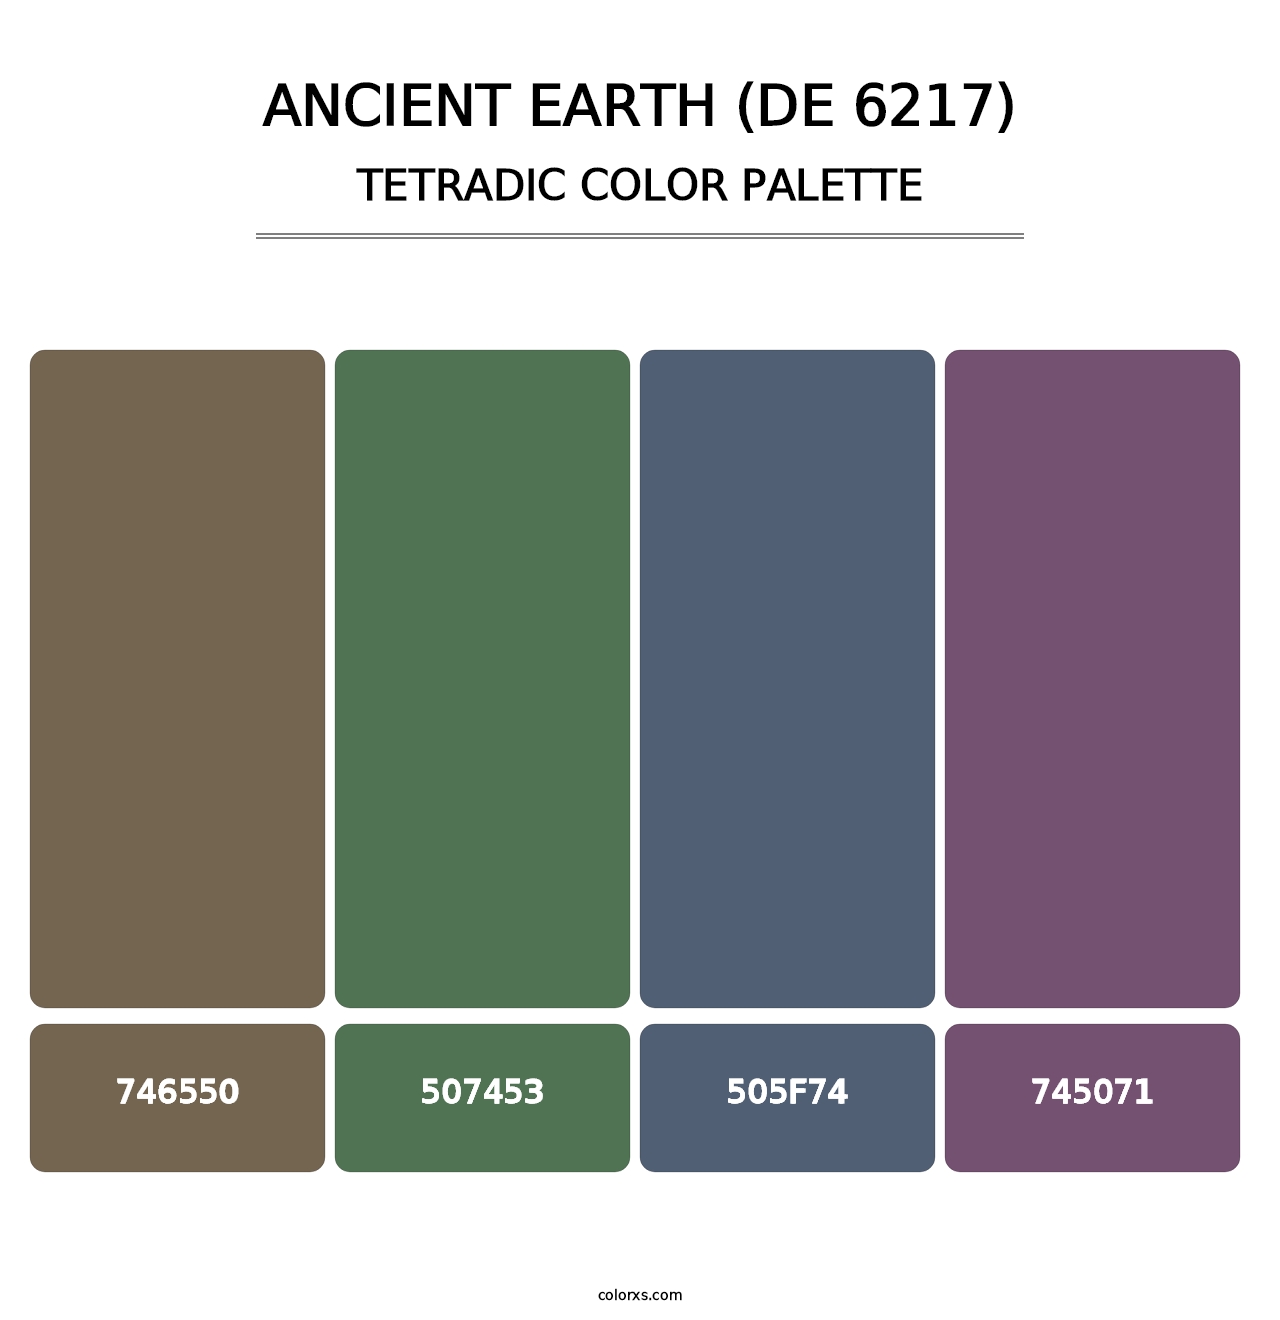 Ancient Earth (DE 6217) - Tetradic Color Palette